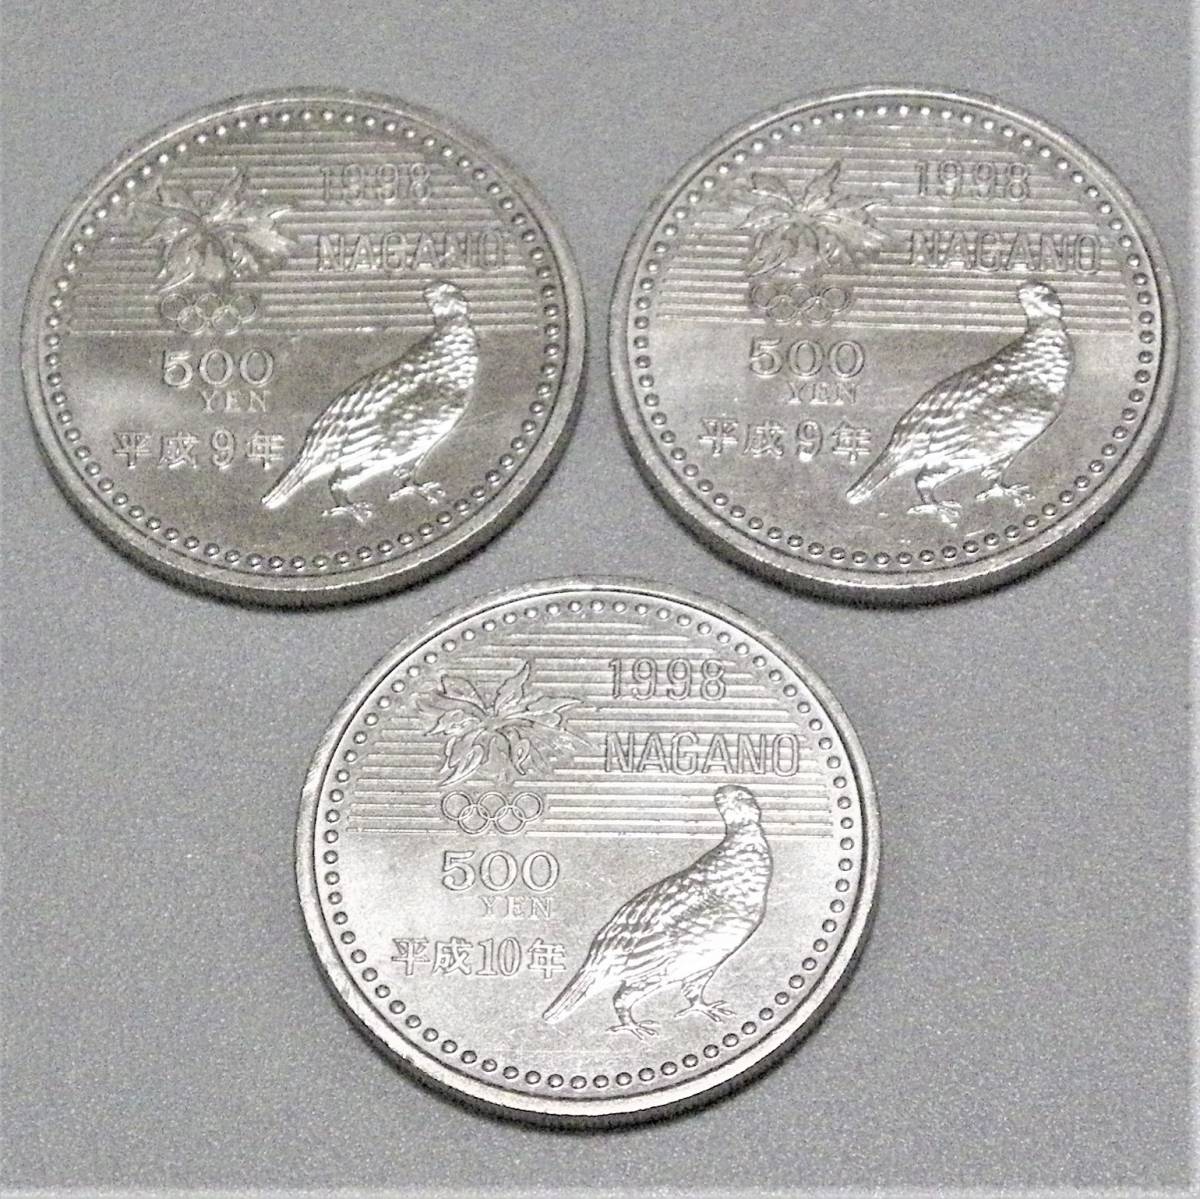 売れ筋アイテムラン 長野オリンピック記念 500円白銅貨3 フリースタイル 平成10年 1998年 未使用